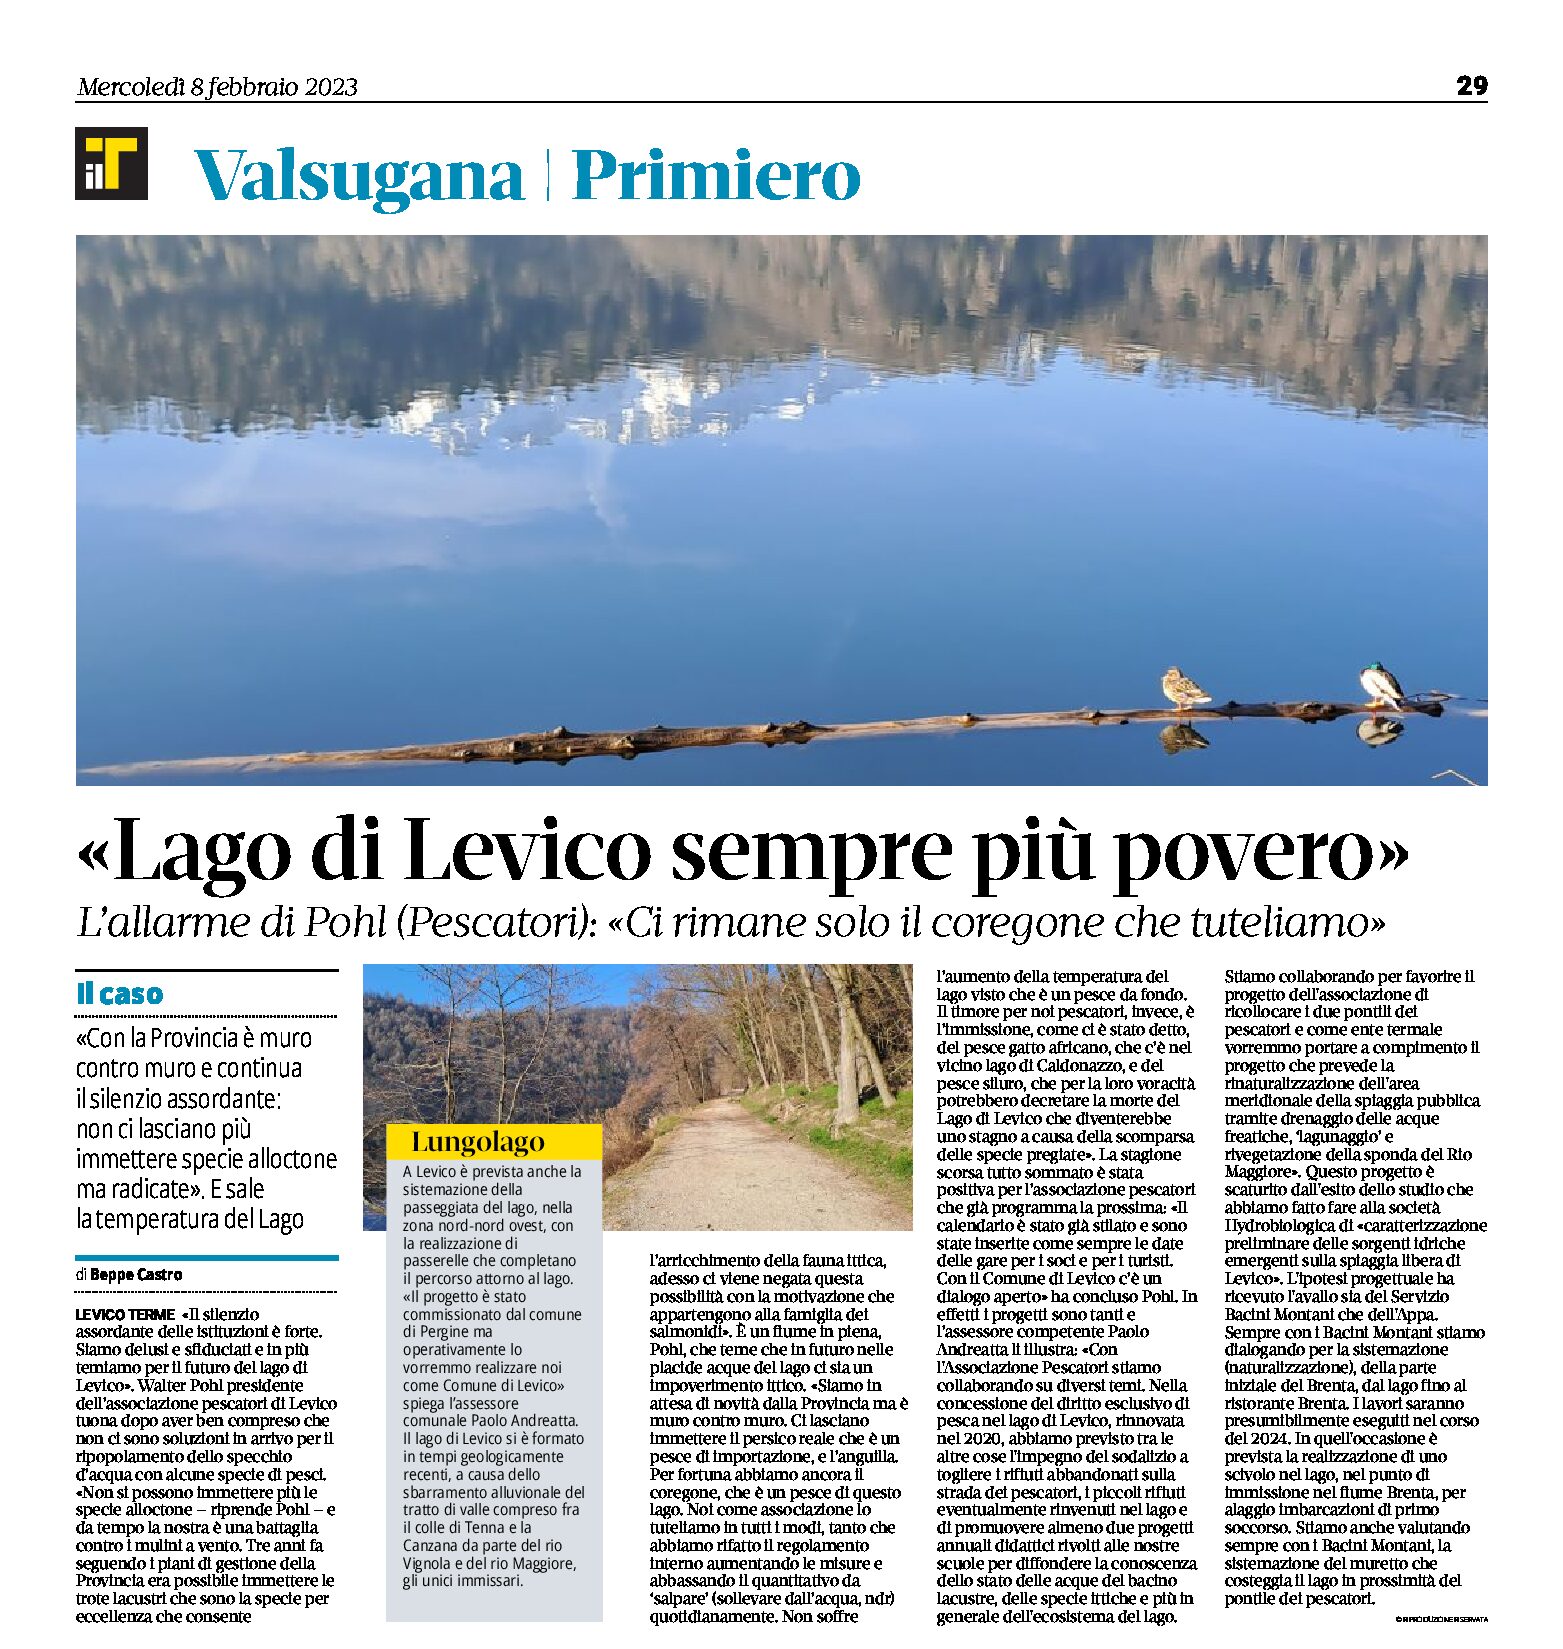 Lago di Levico: pochi pesci e acqua sempre più calda